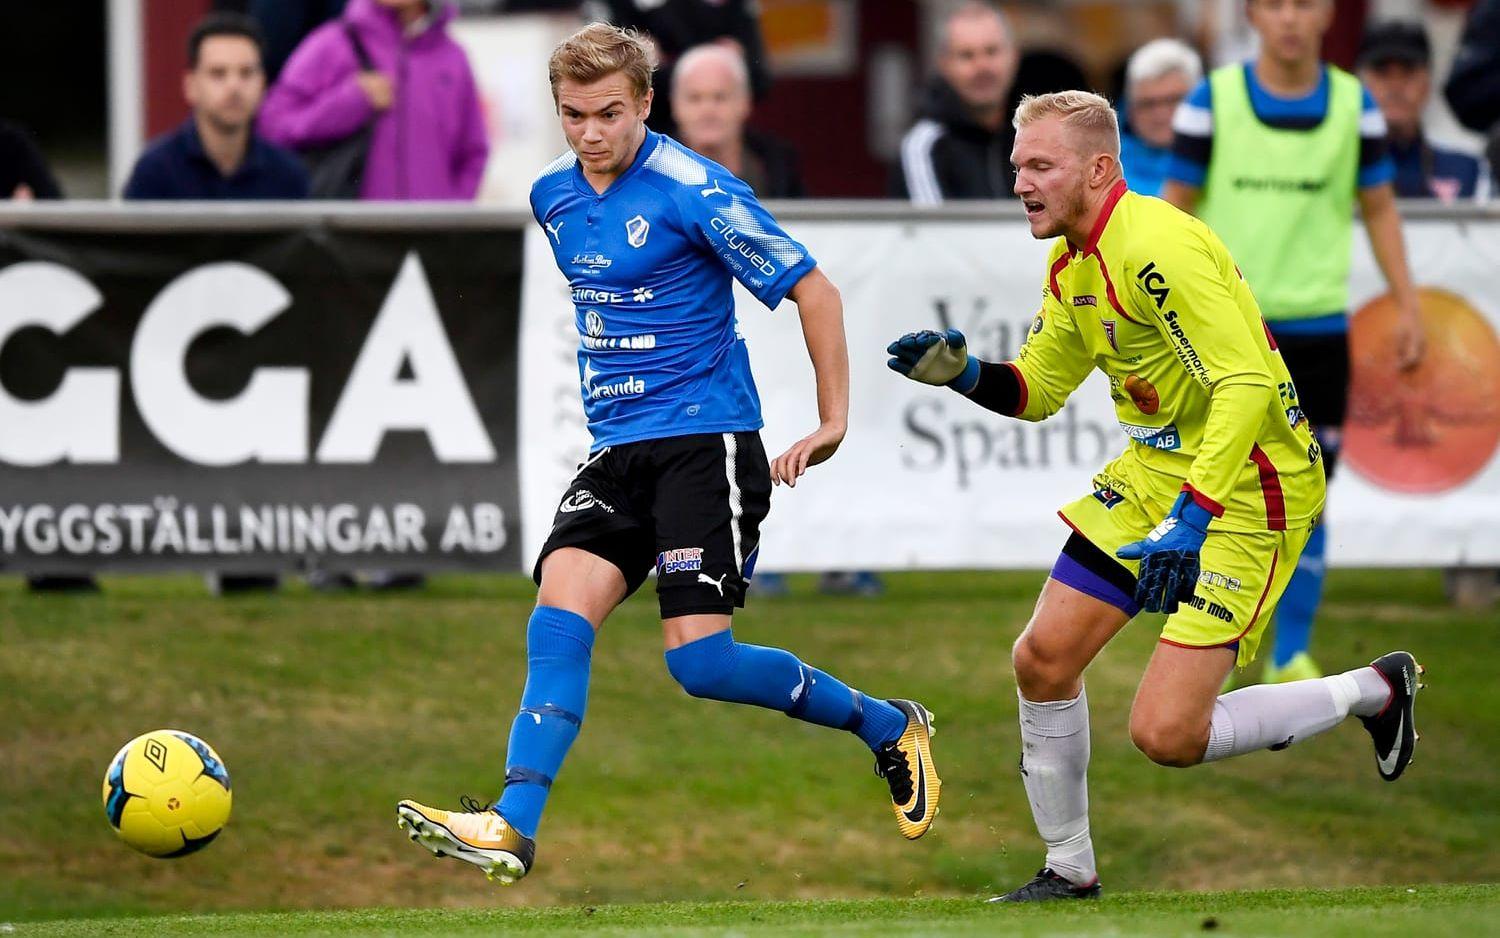 Drömdebut. Nye islänningen Tryggvi Hrafn Haraldsson gjorde under tisdagen ett mål och en assist i debuten för HBK mot Tvååker i DM. Bild: Krister Andersson.